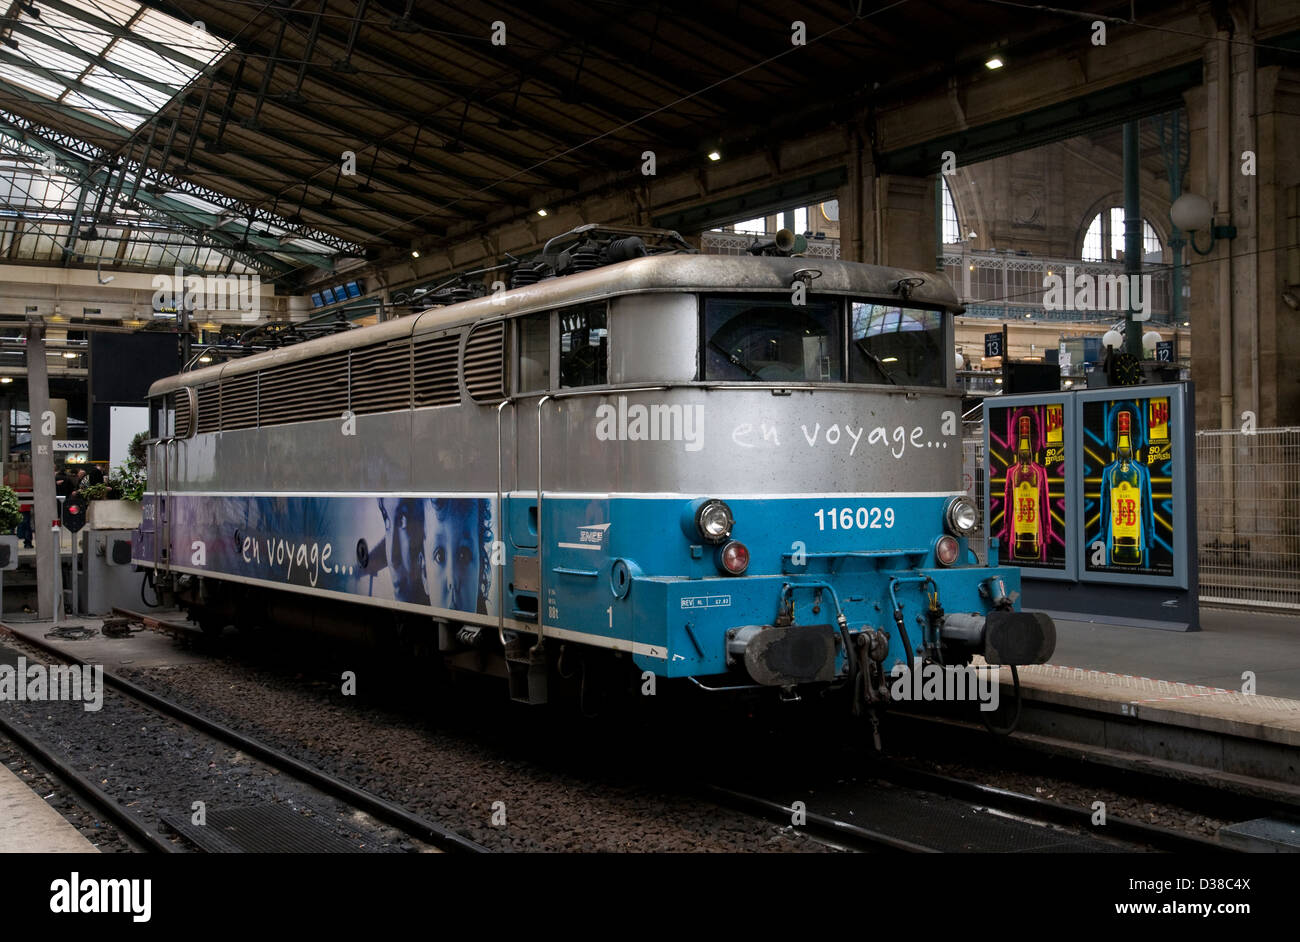 Locomotora eléctrica clase sncf,Bb,16000,116029 mte,Gare du Nord,París,Francia Foto de stock